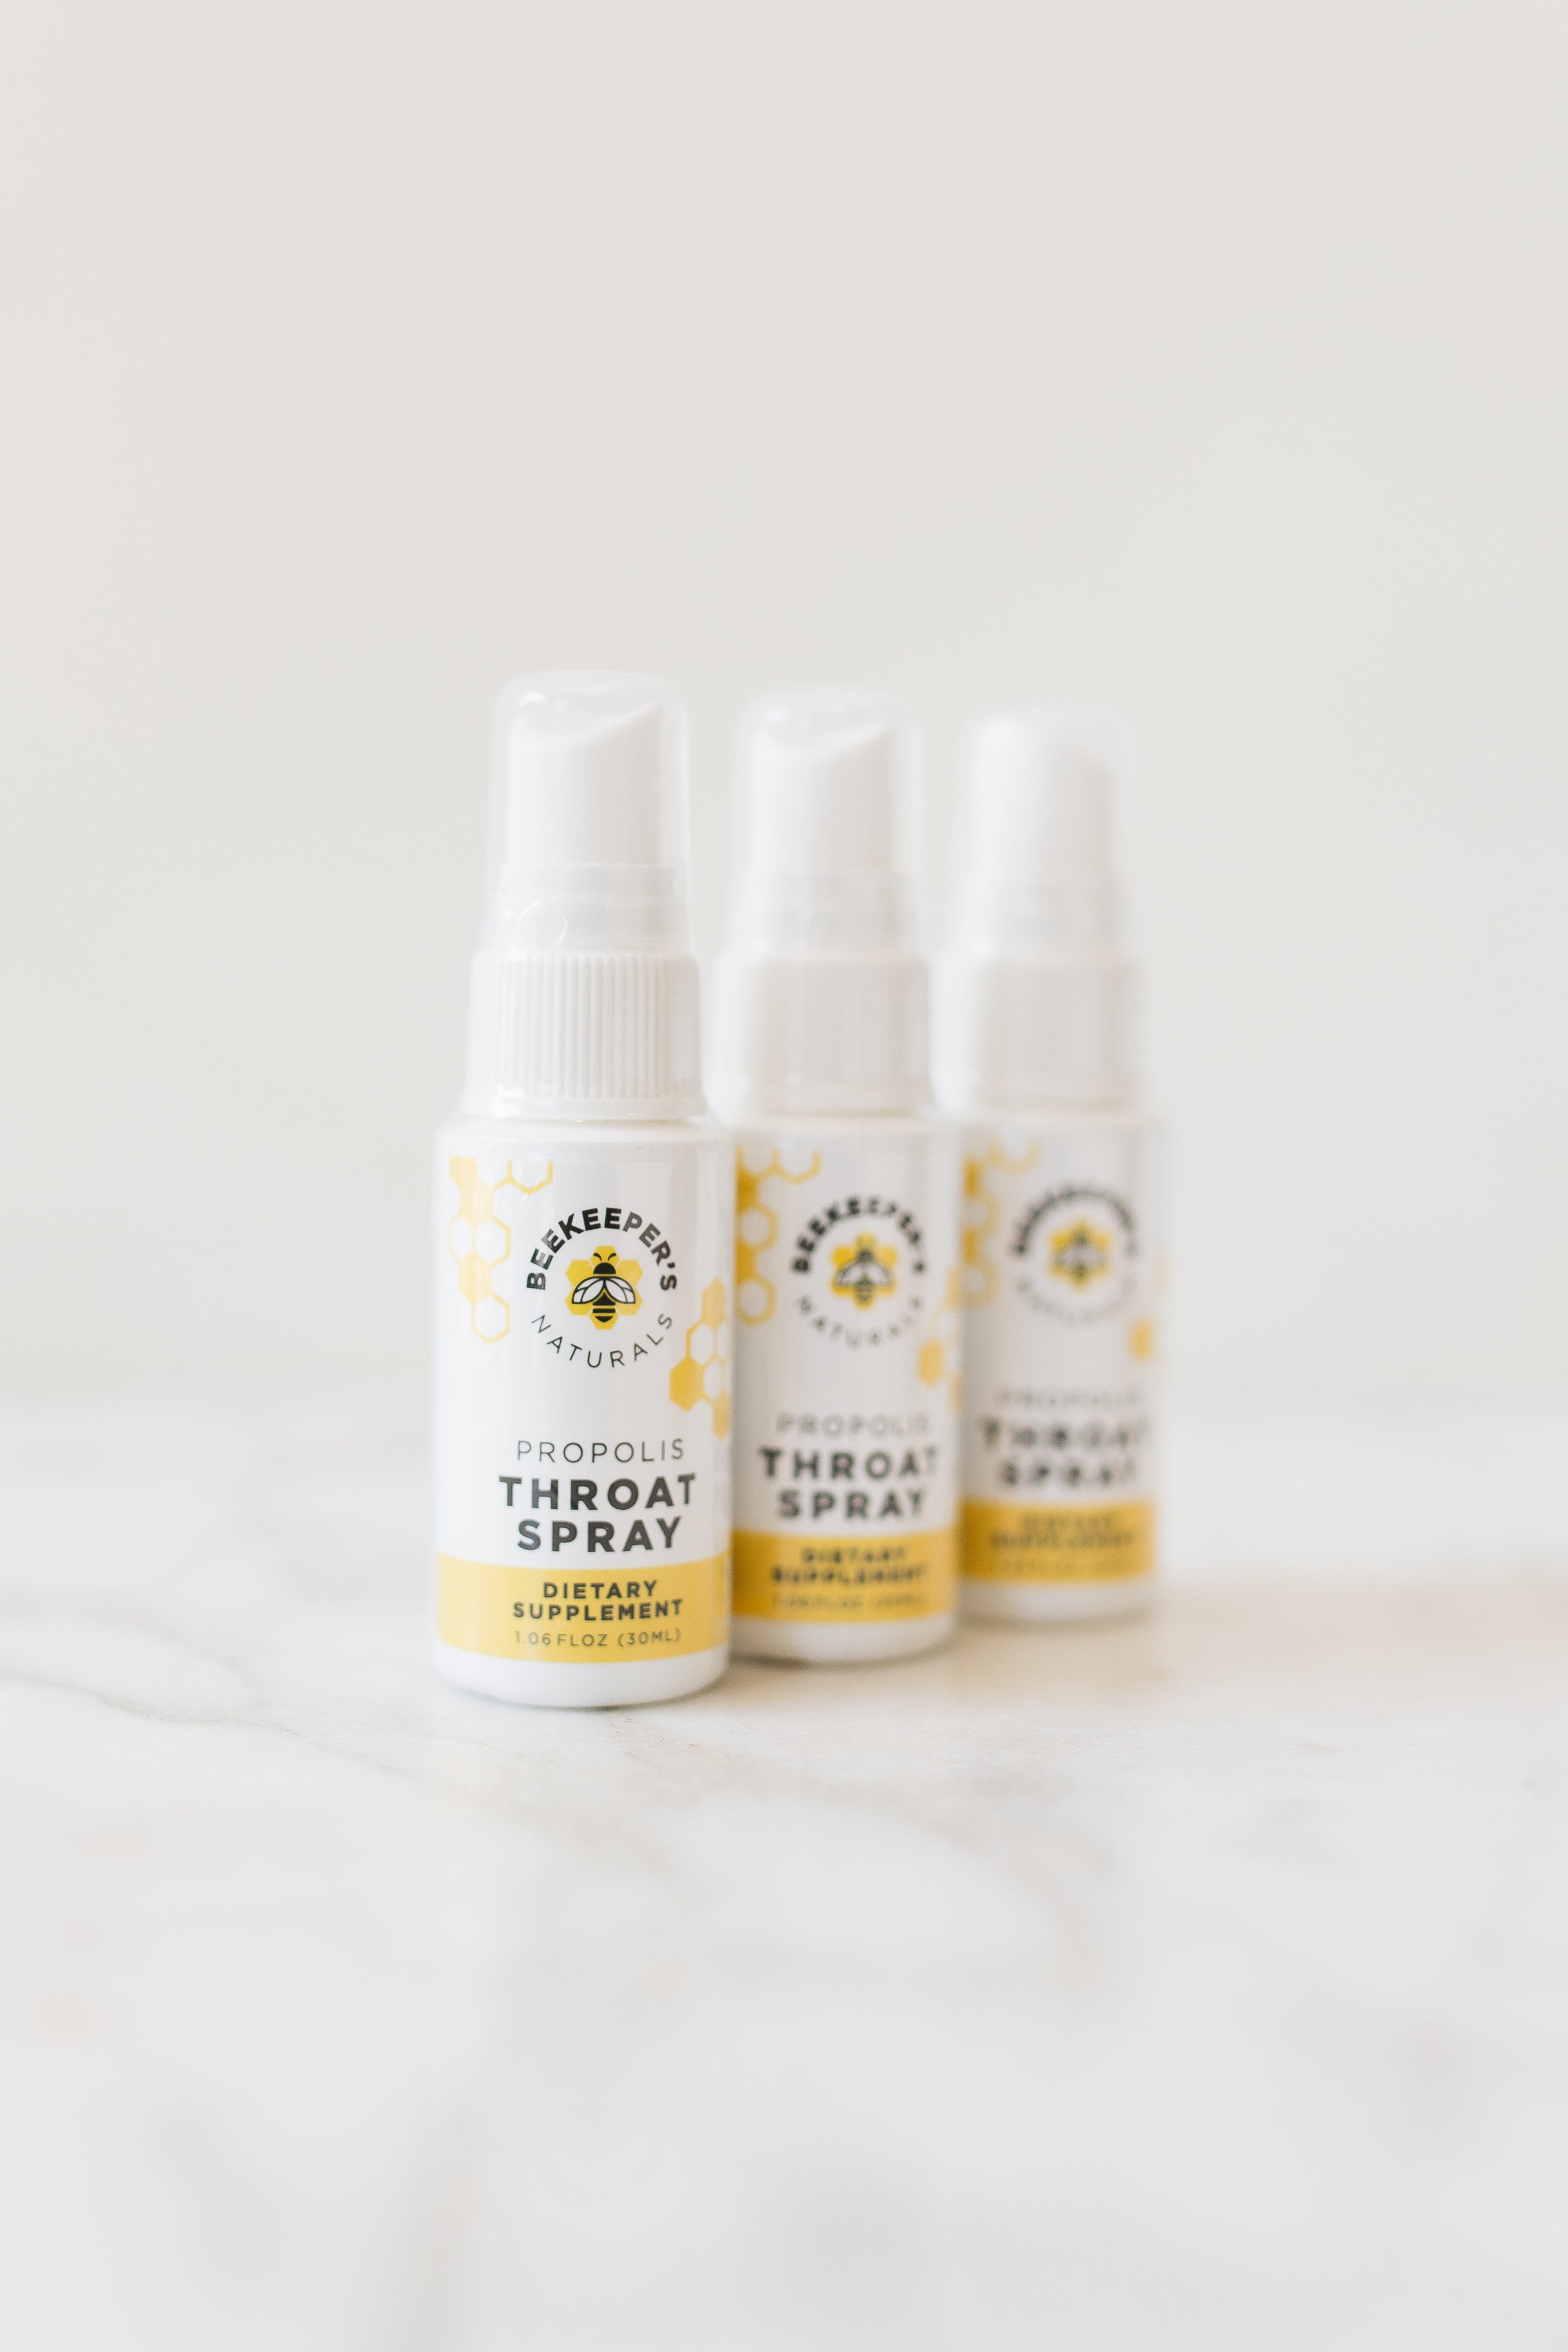 Beekeeper's Naturals Throat Spray — Clean Healthcare